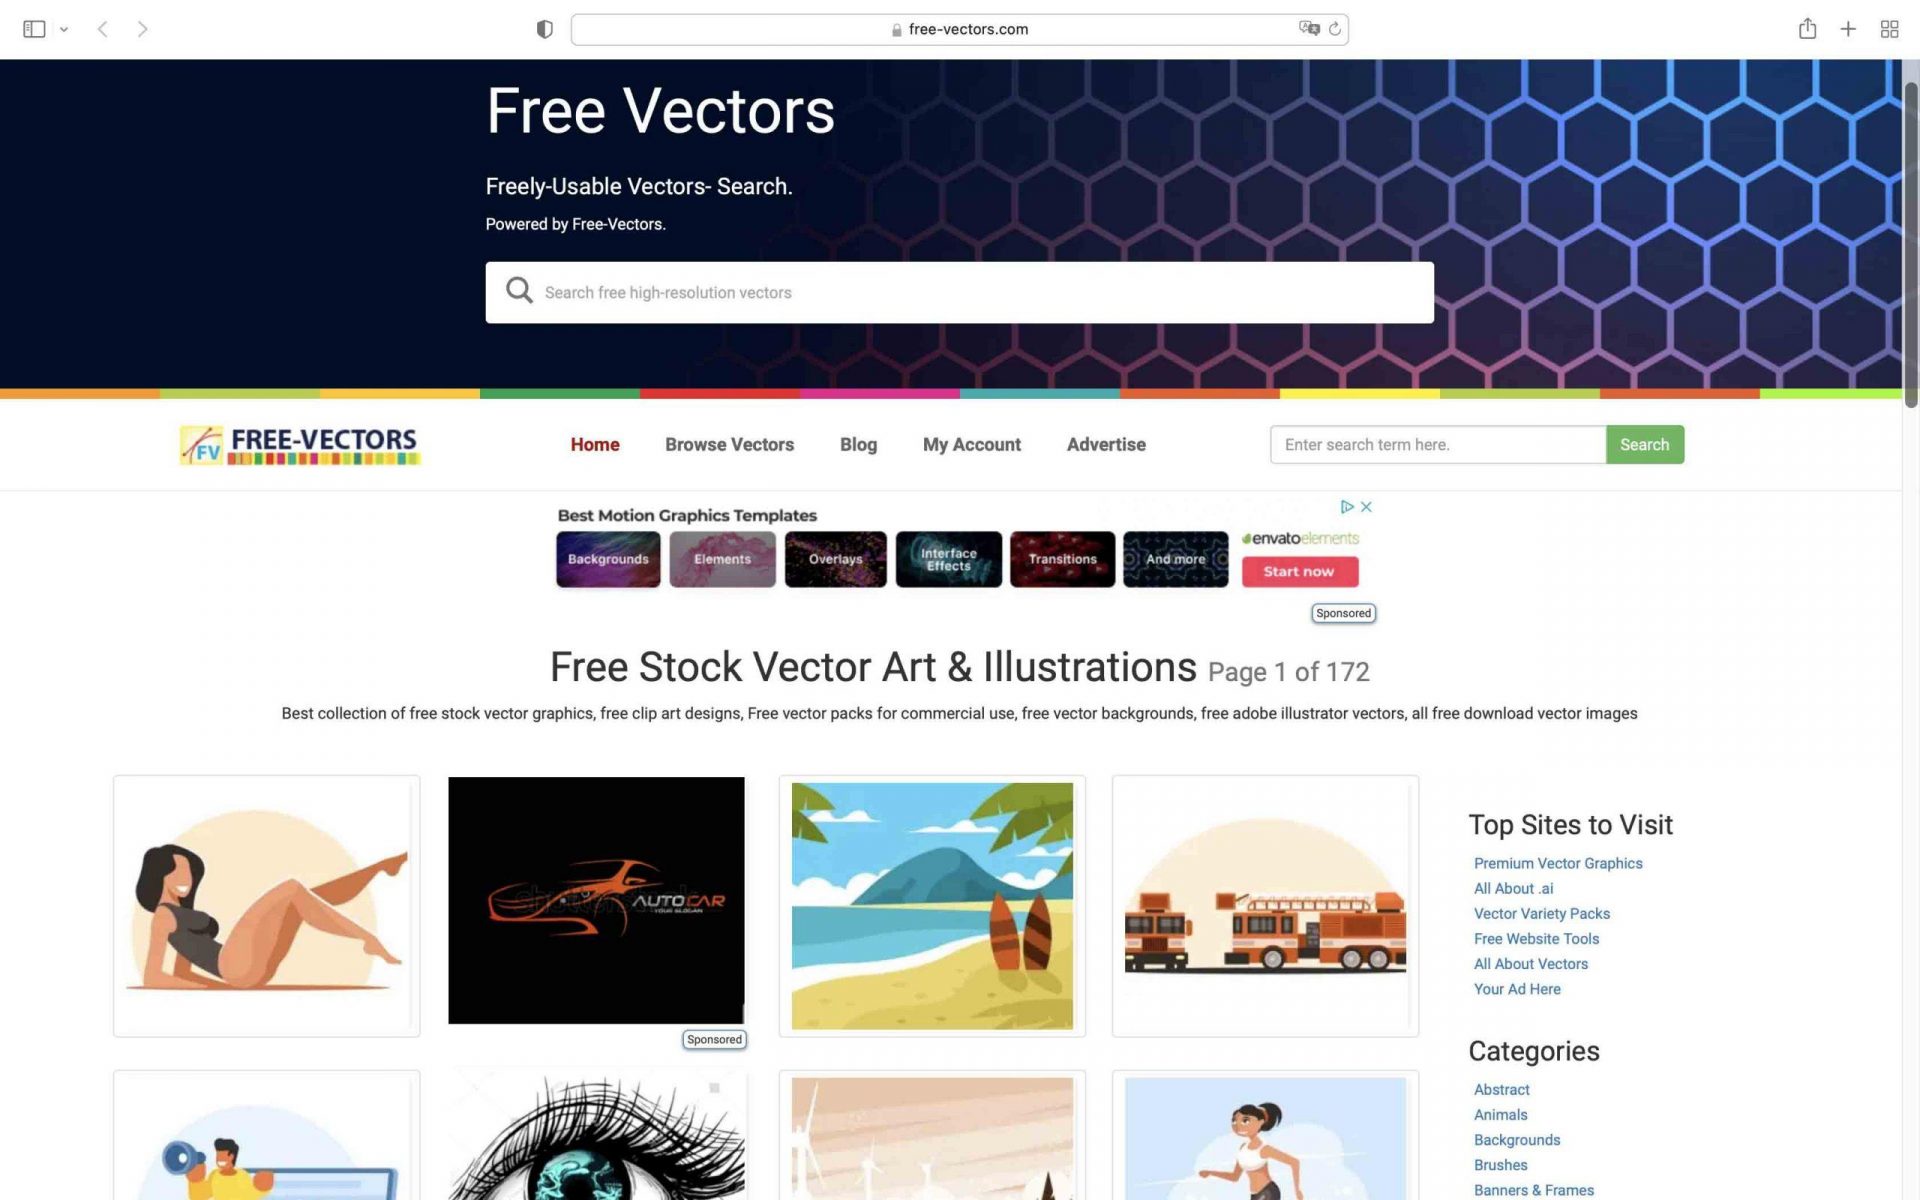 Free-vectors